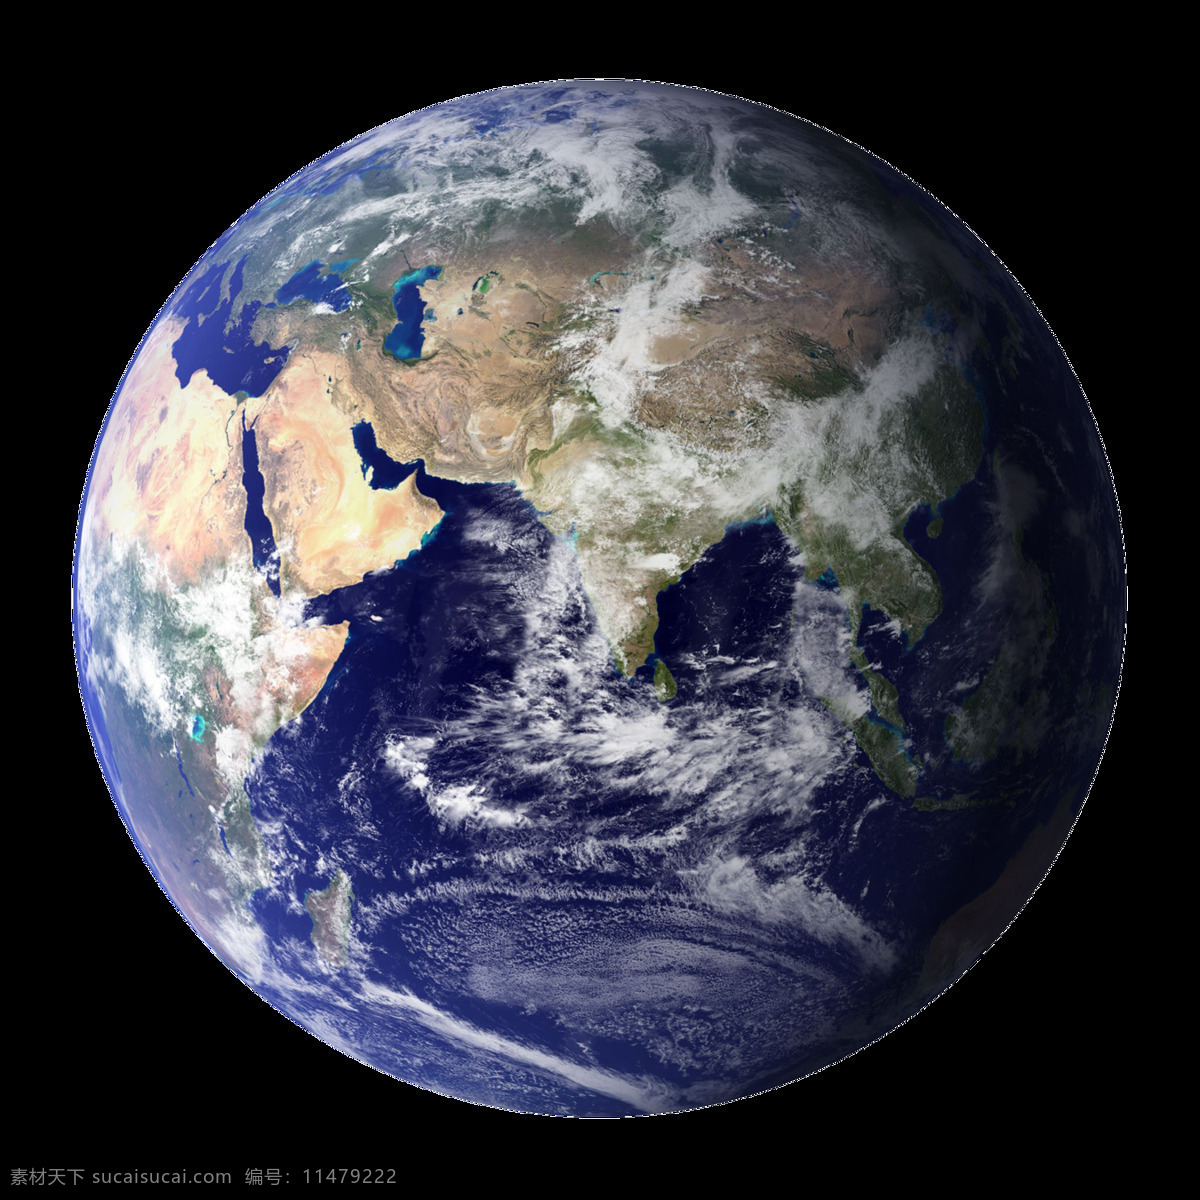 壮观 地球 蓝色 绿色 紫色 星球 地球素材 星球素材 宇宙素材 壮观风格 地球图片